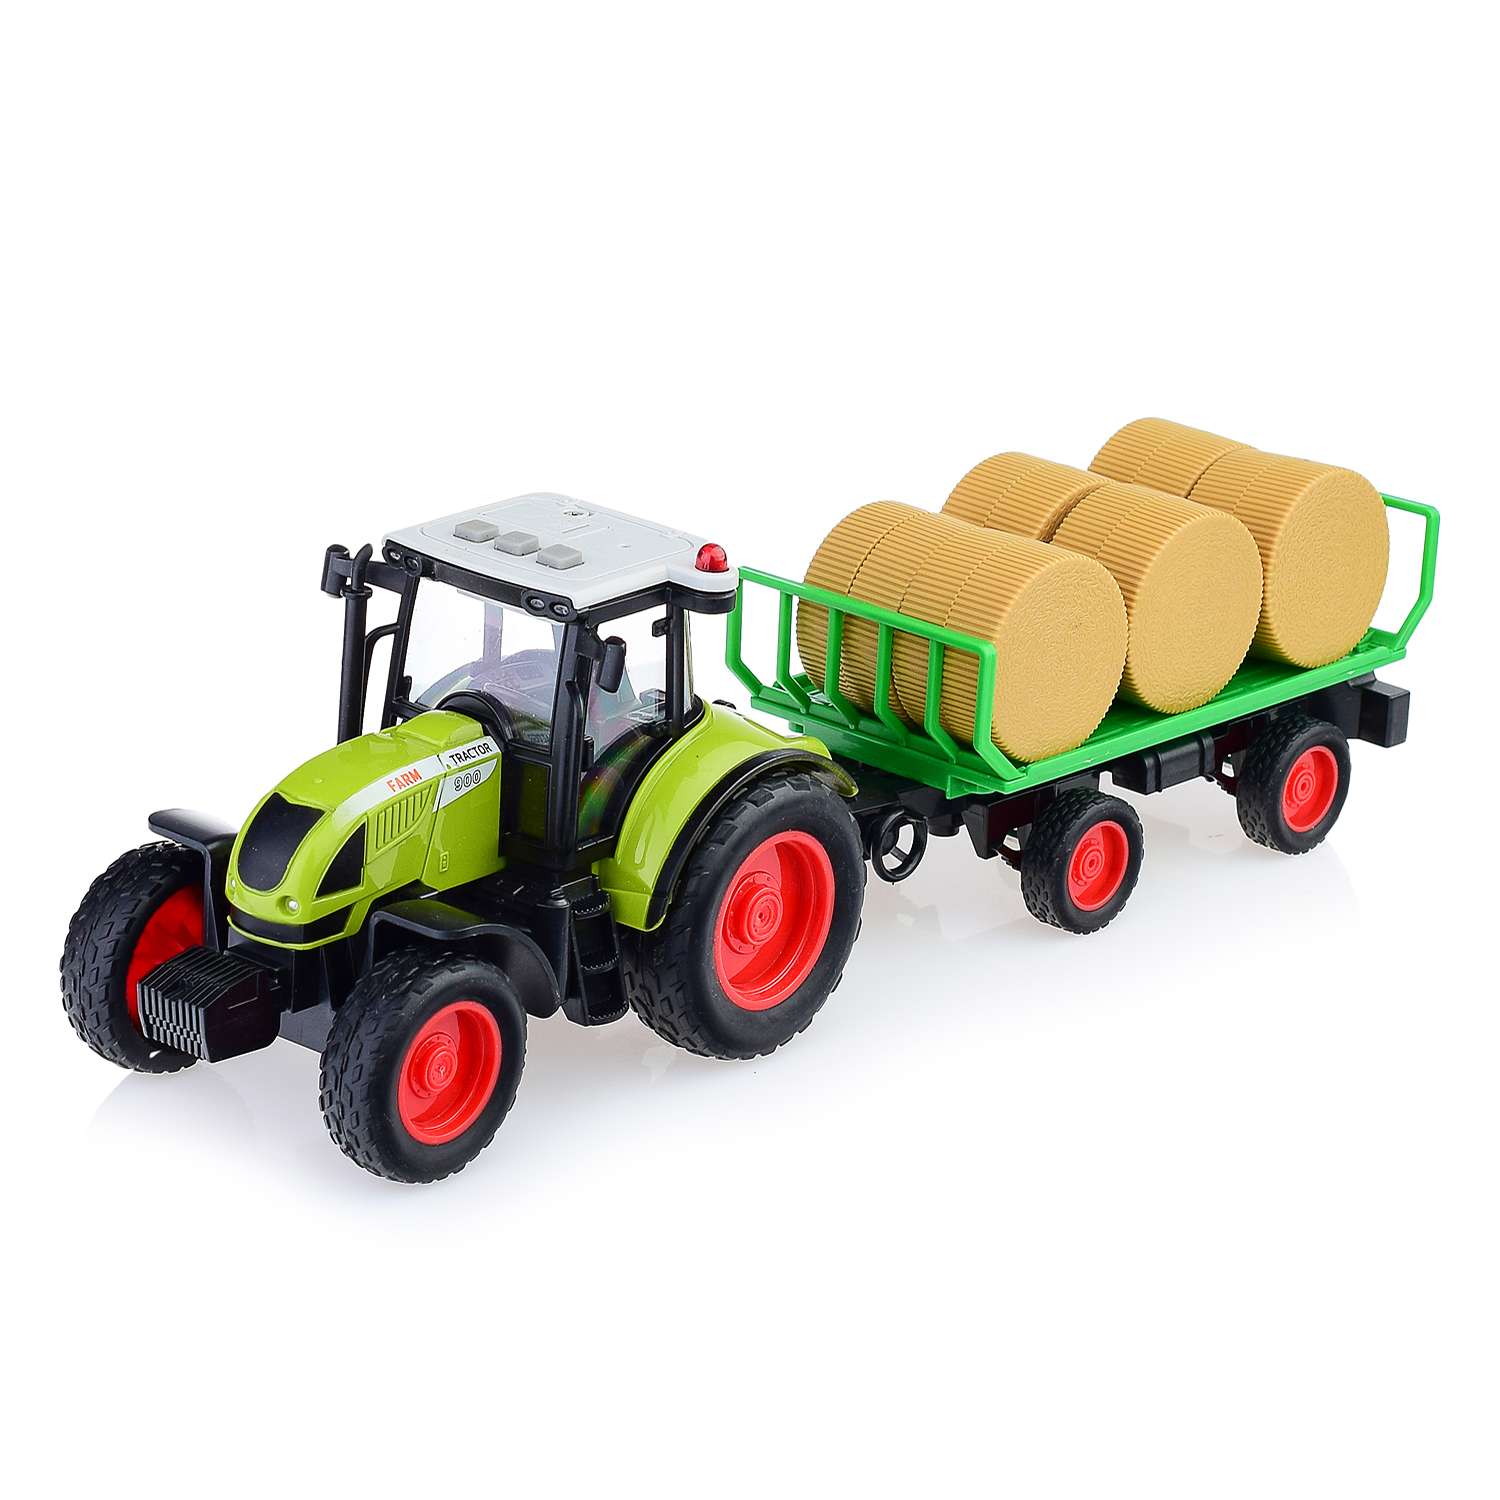 Трактор WENYI с прицепом для перевозки сена со световыми и звуковыми эффектами WY900E - фото 2